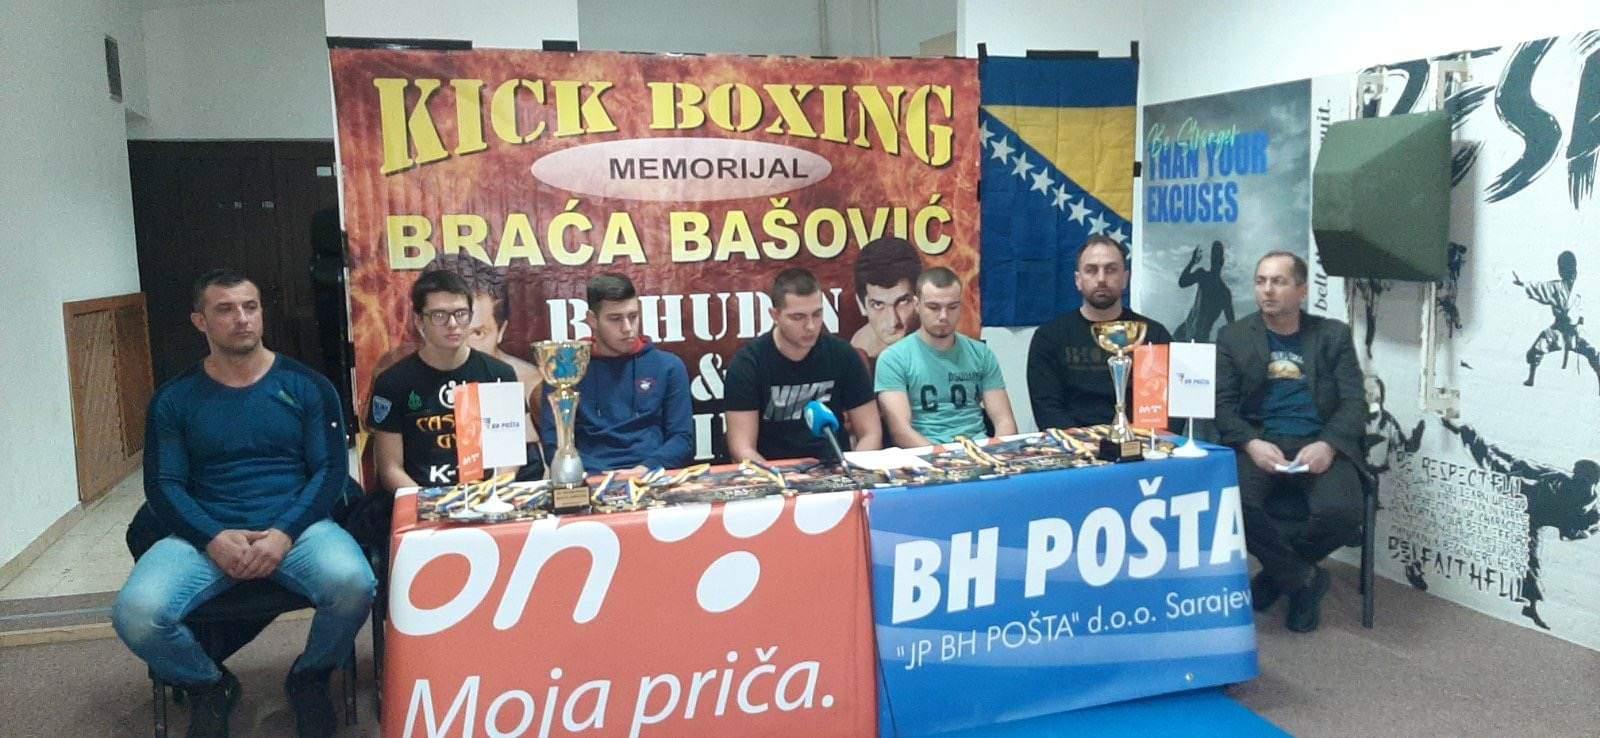 U nedjelju u Domu mladih kickboxing turnir "Braća Bašović": Posjetioci će uživati u šest borbi